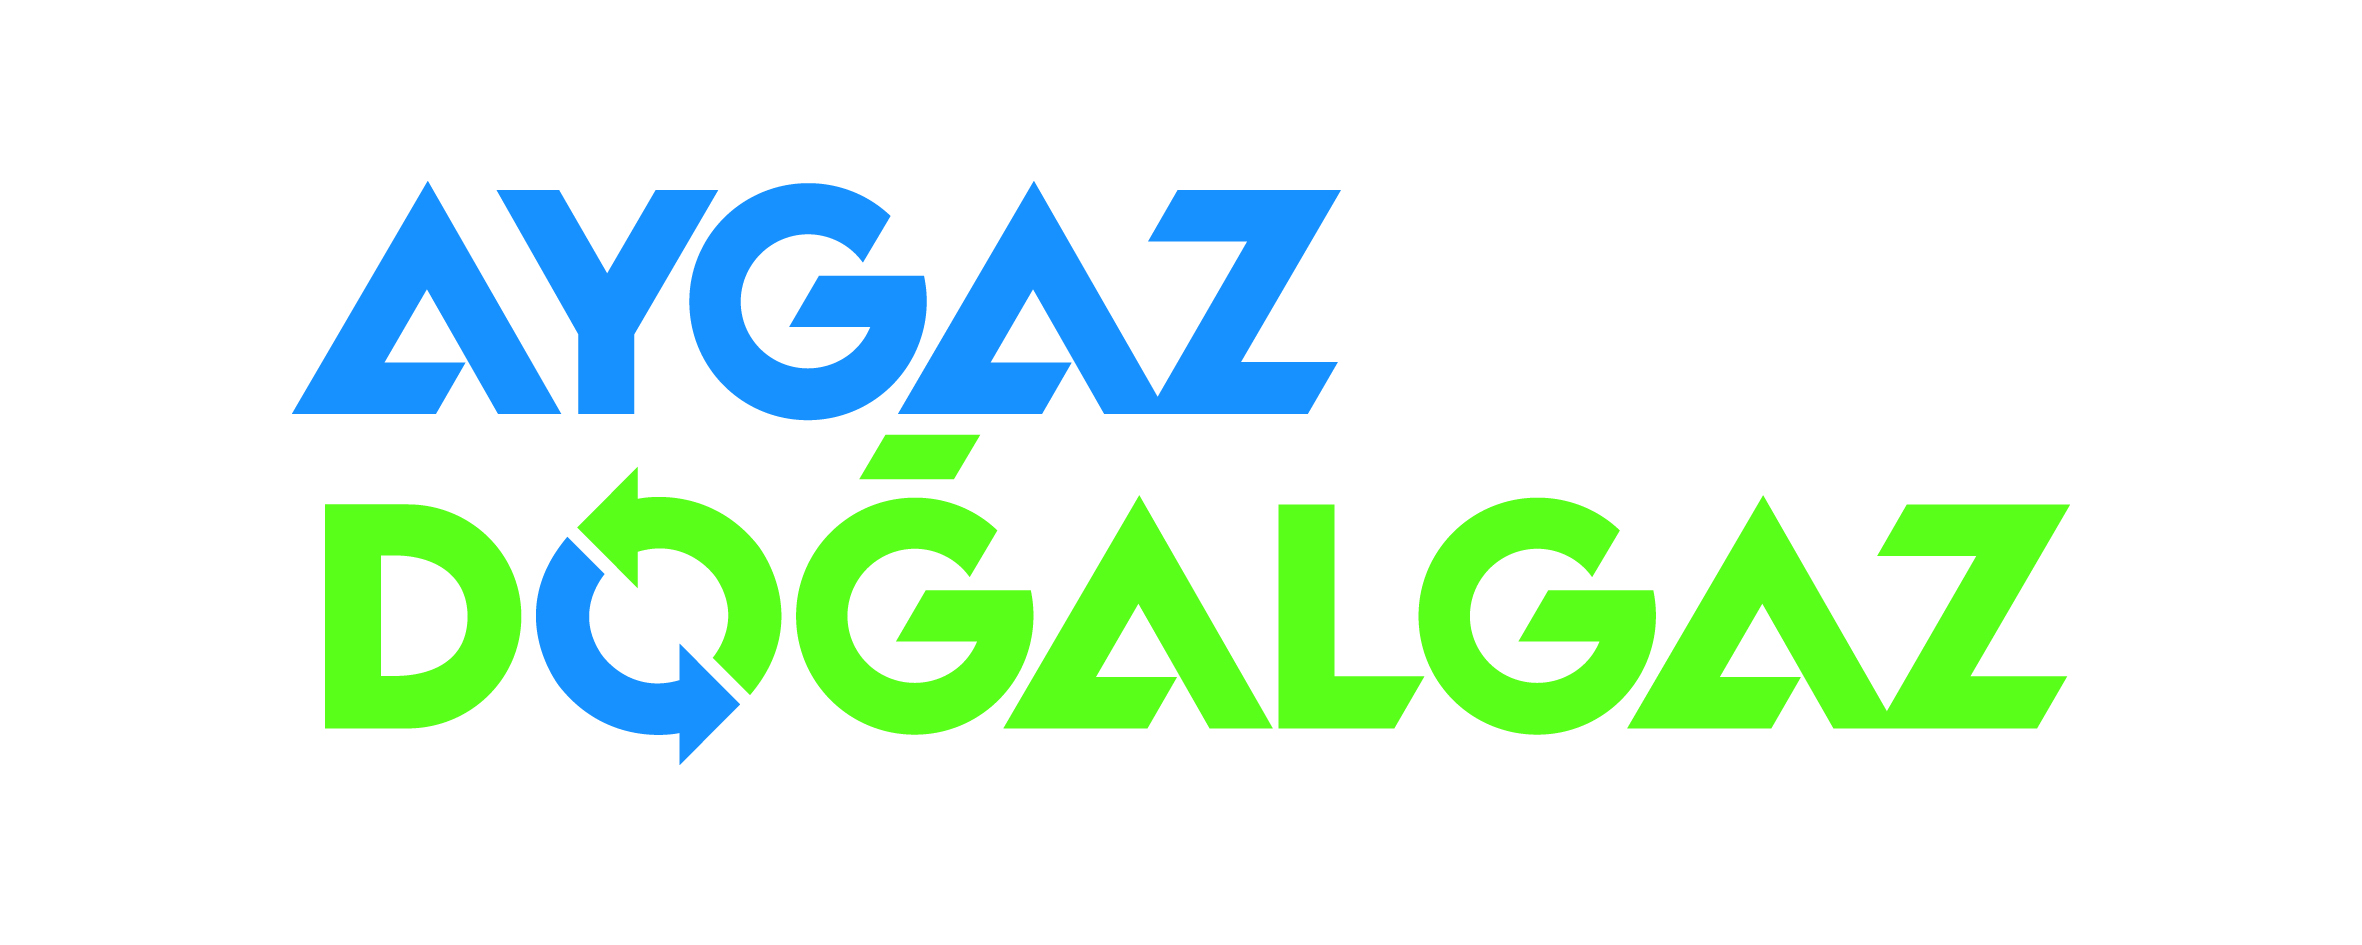 Aygaz Doğal Gaz - Aygaz Vector, Transparent background PNG HD thumbnail